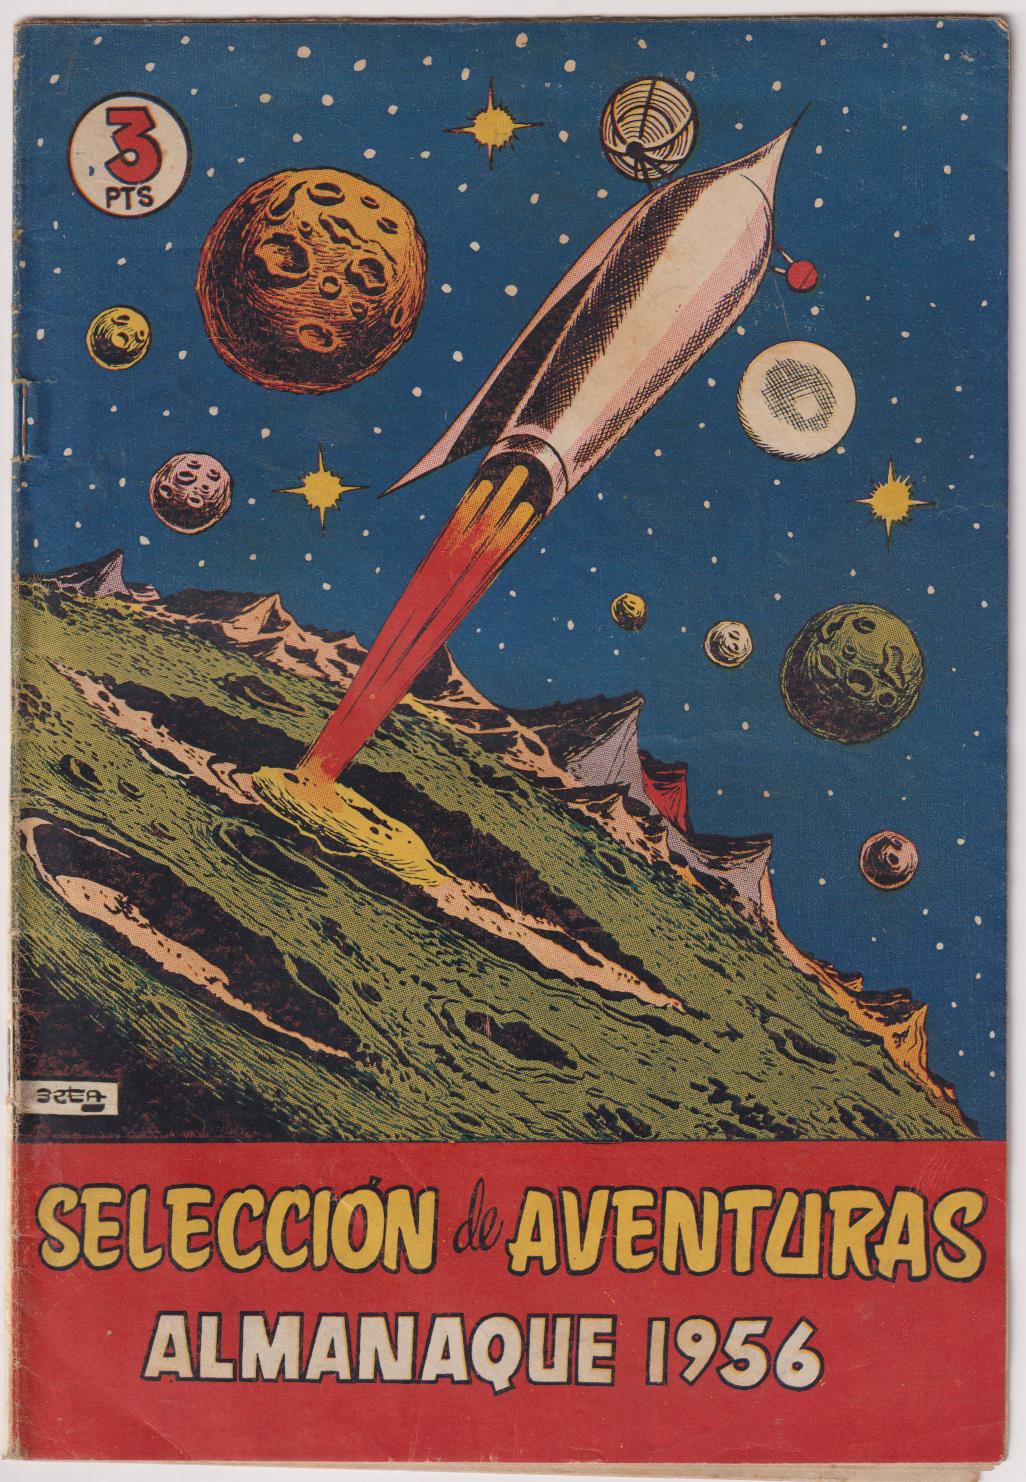 Selección de Aventuras. Almanaque 1956. Toray. (24,5x17) 24 páginas